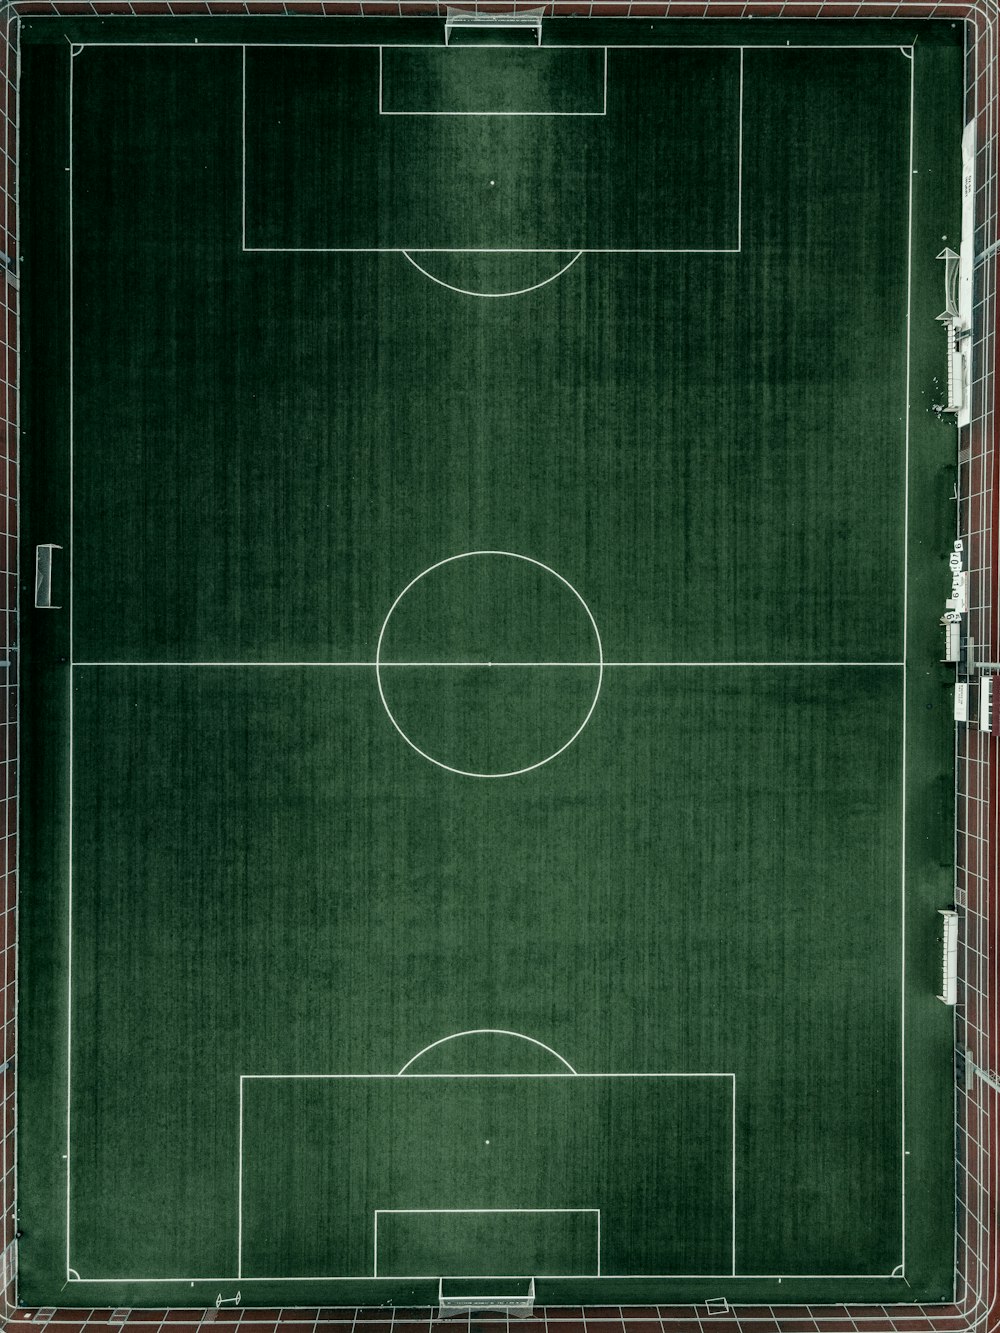 サッカー場の空中写真